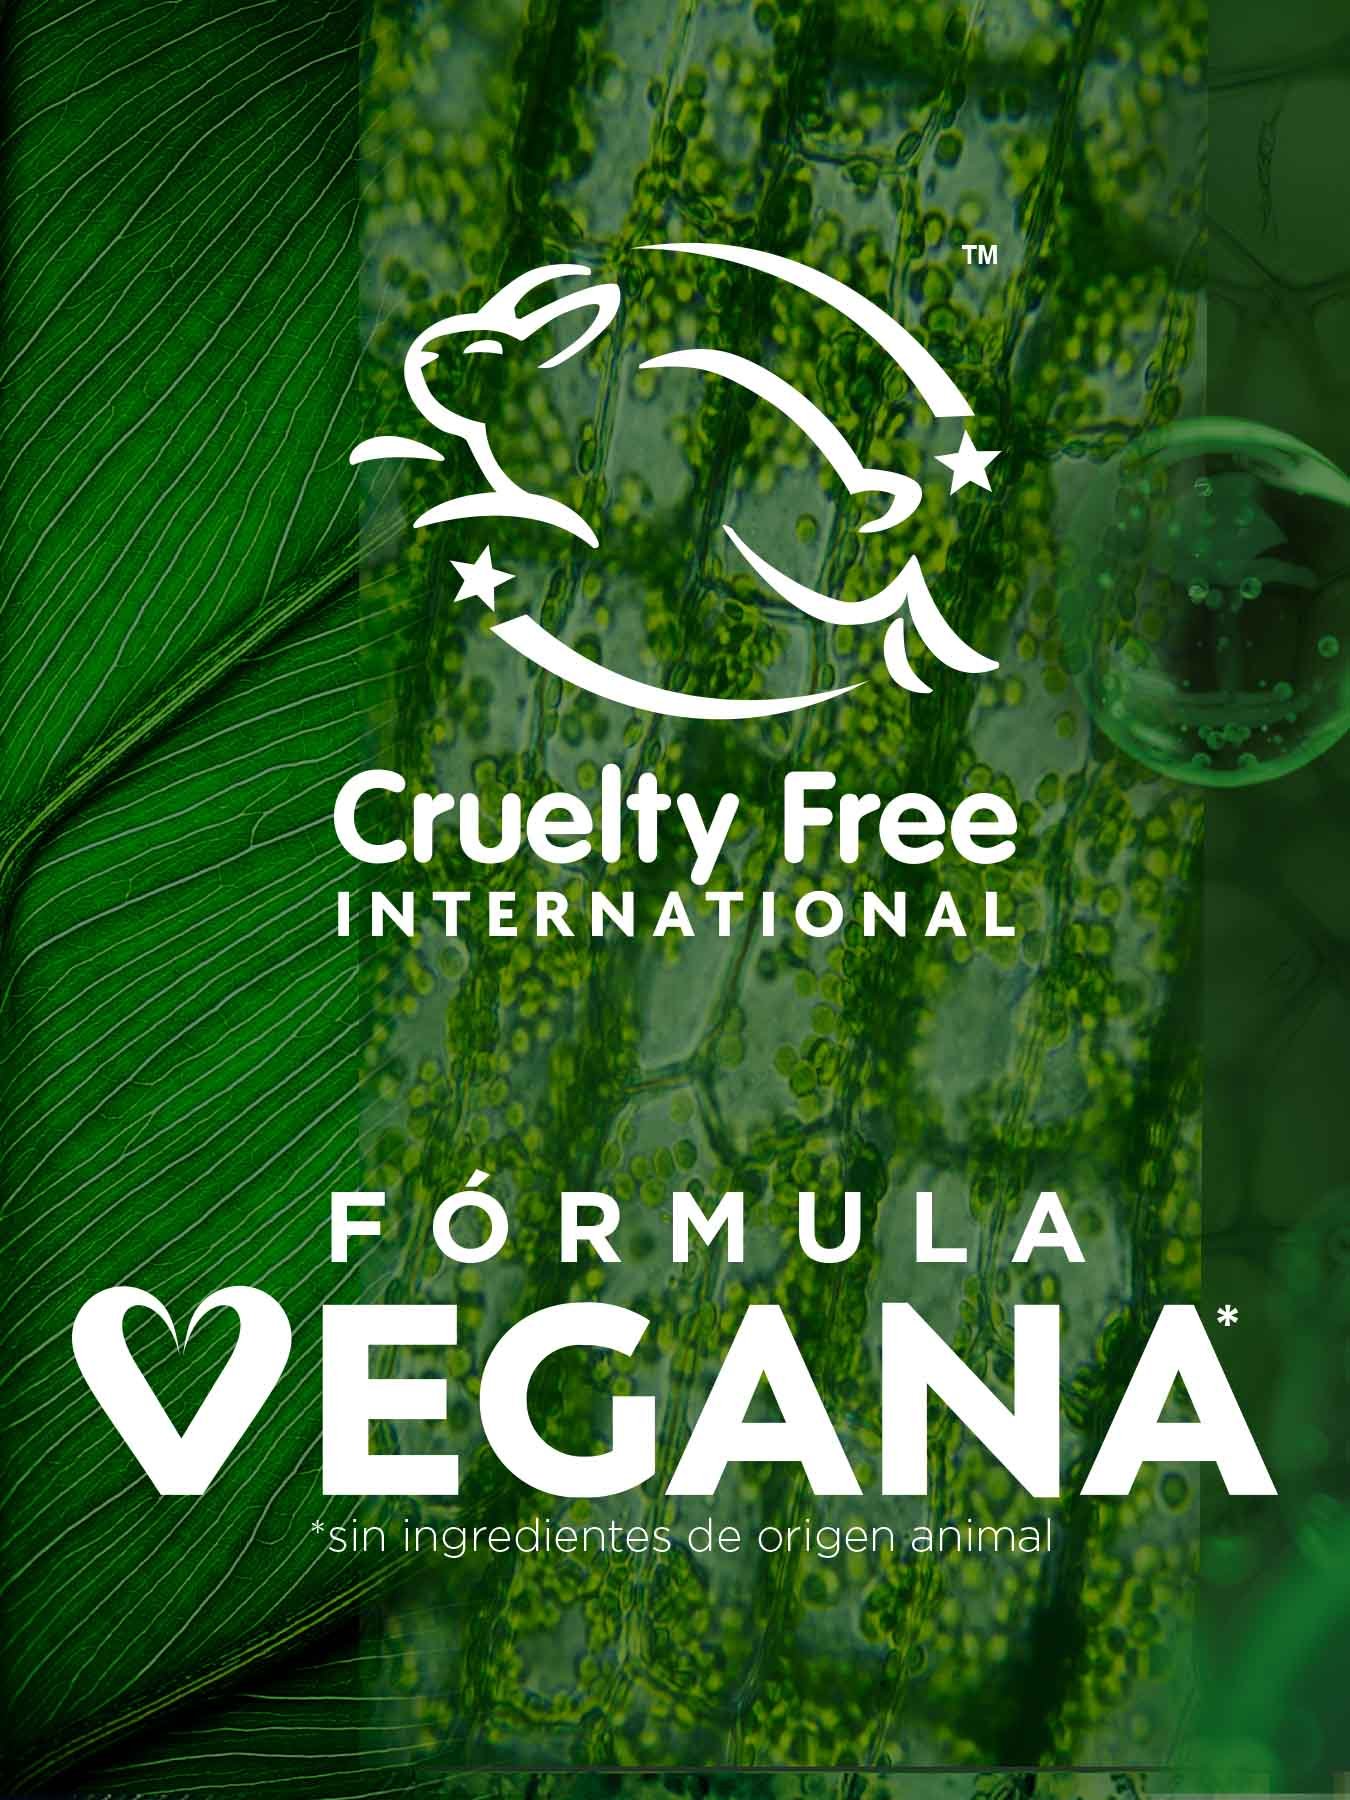 Garnier, Fórmula vegana, aprobado por Cruelty Free International credenciales verdes.